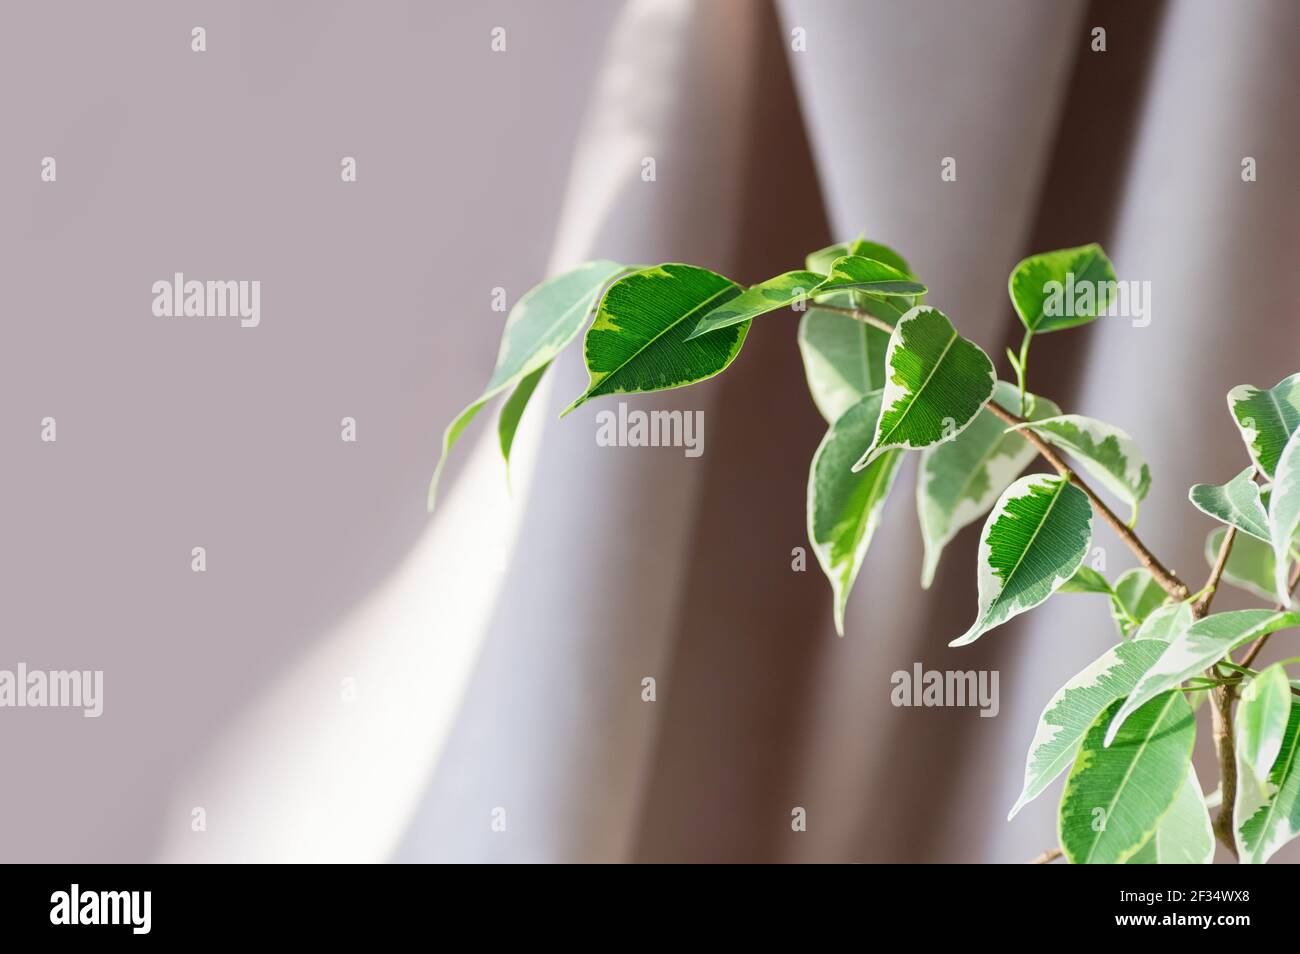 Indoor-Pflanze ficus benjamin auf einem beigen Textil-Hintergrund. Nahaufnahme. Selektiver Fokus. Speicherplatz kopieren. Stockfoto